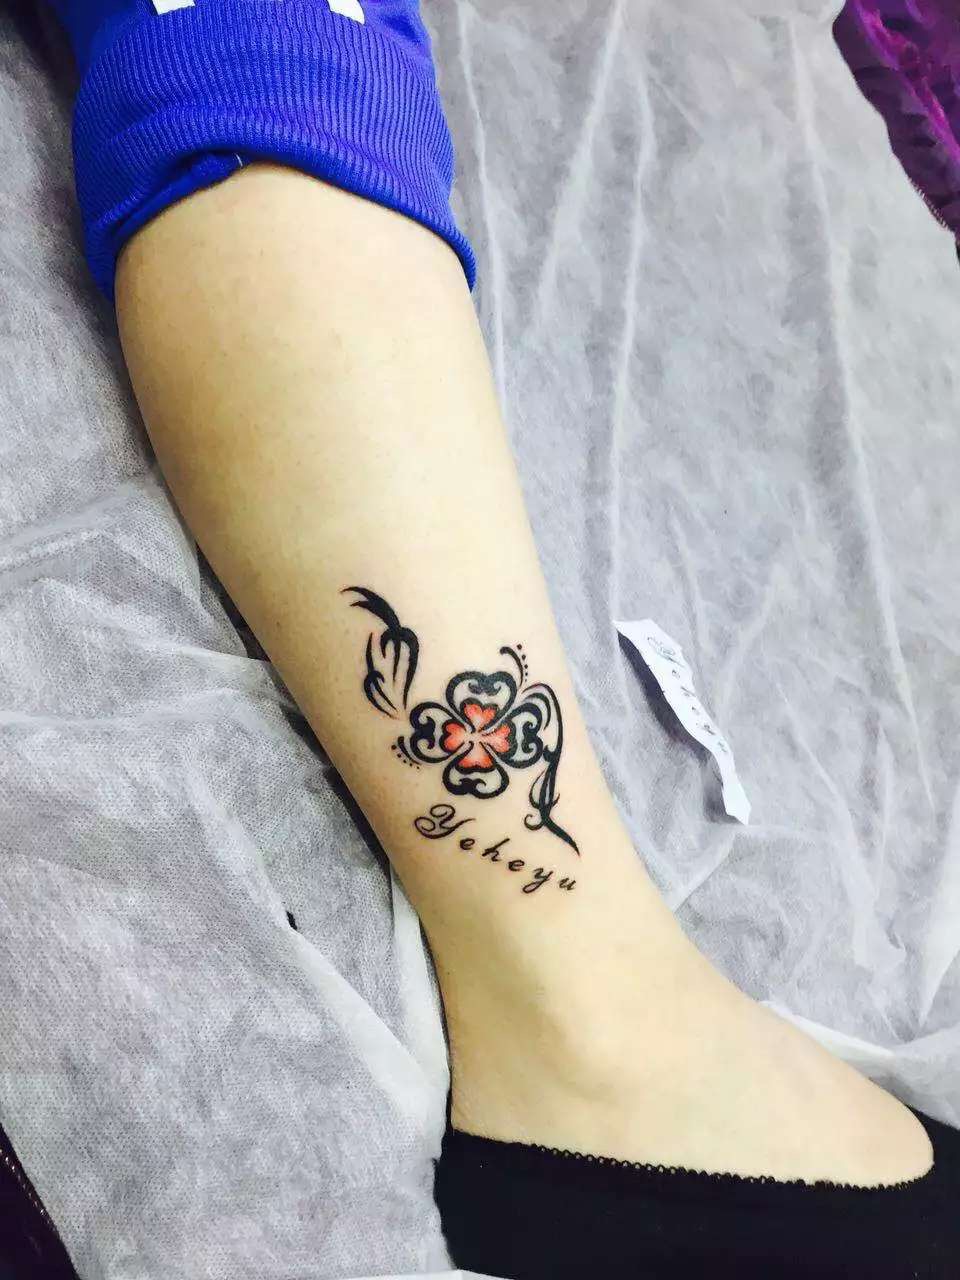 眉清目秀的徐小姐小腿上的个性四叶草纹身图案